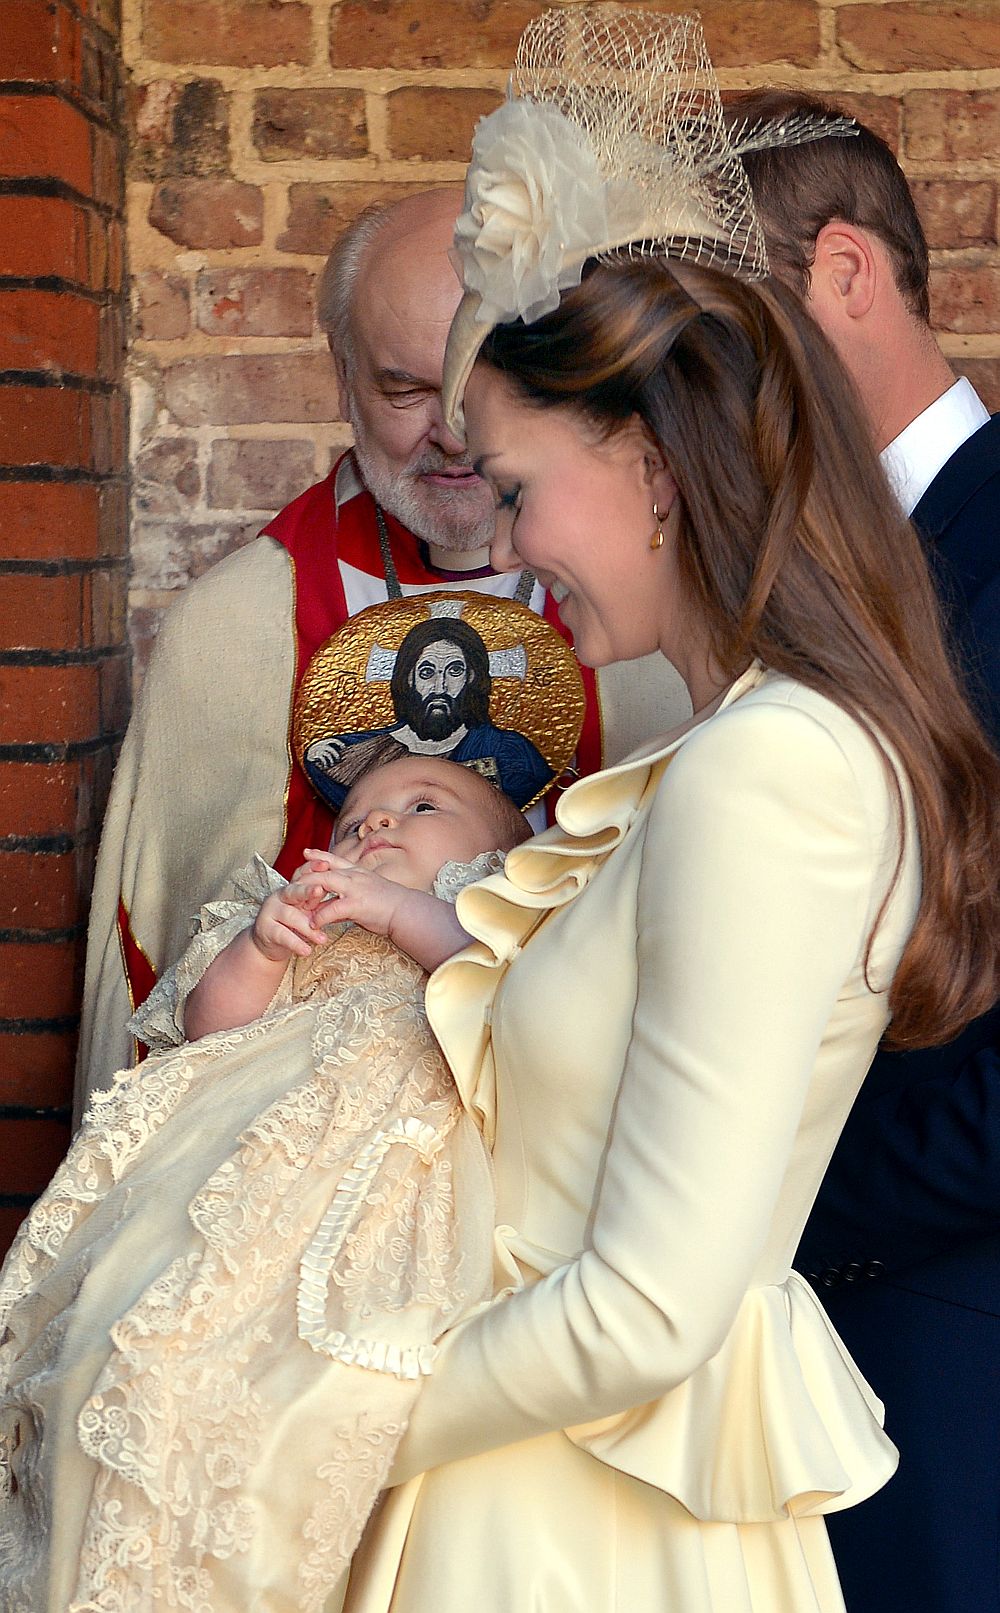 Принц Джордж бе кръстен на три месеца - на 10 октомври 2013 година, в параклиса на двореца Сейнт Джеймс